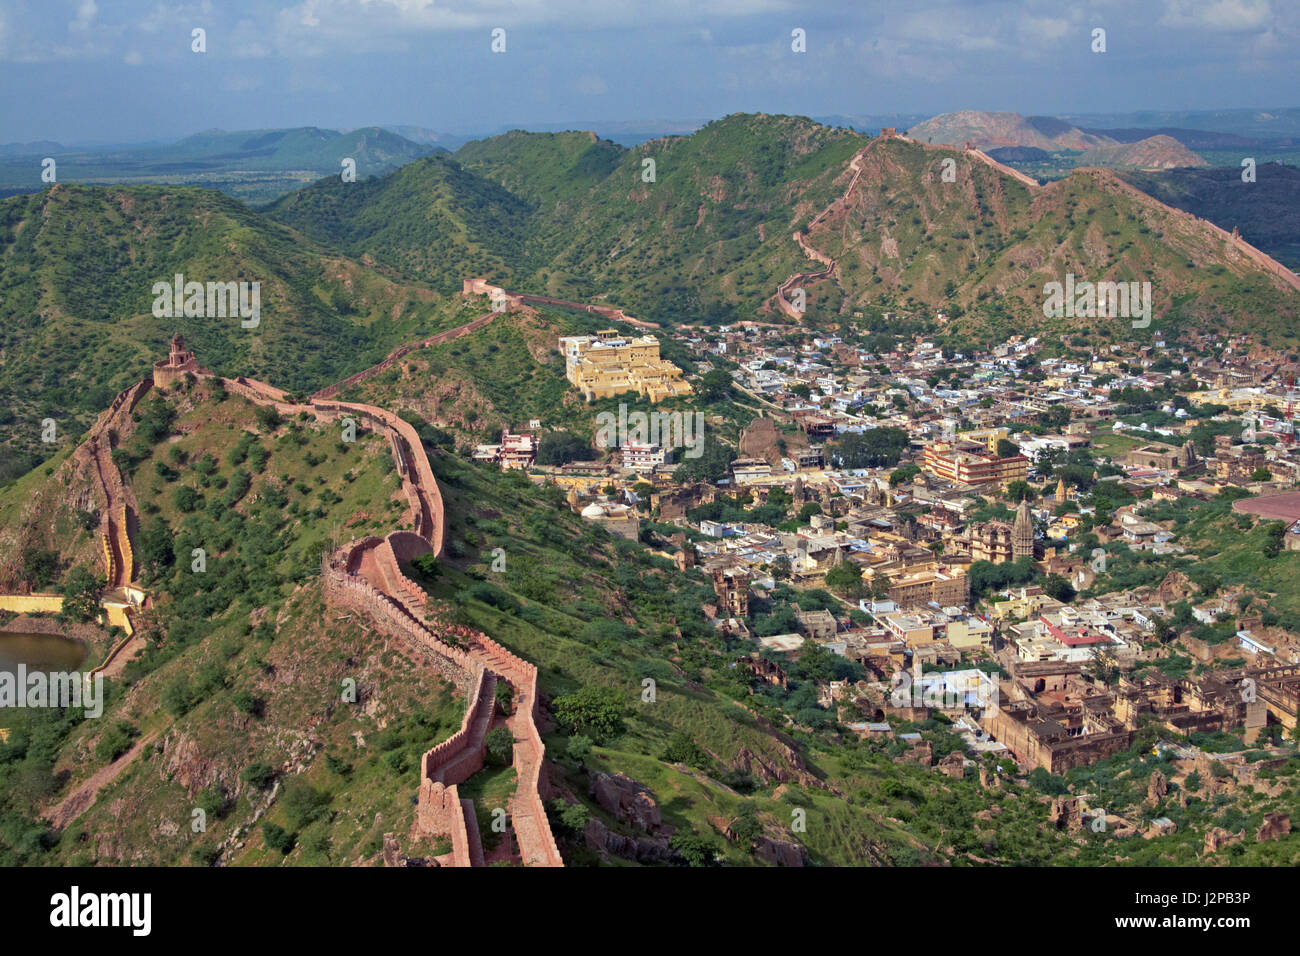 Ancien village de Amer entouré de collines vertes et des murailles fortifiées le long des collines. Près de Jaipur, Rajasthan, Inde. Banque D'Images